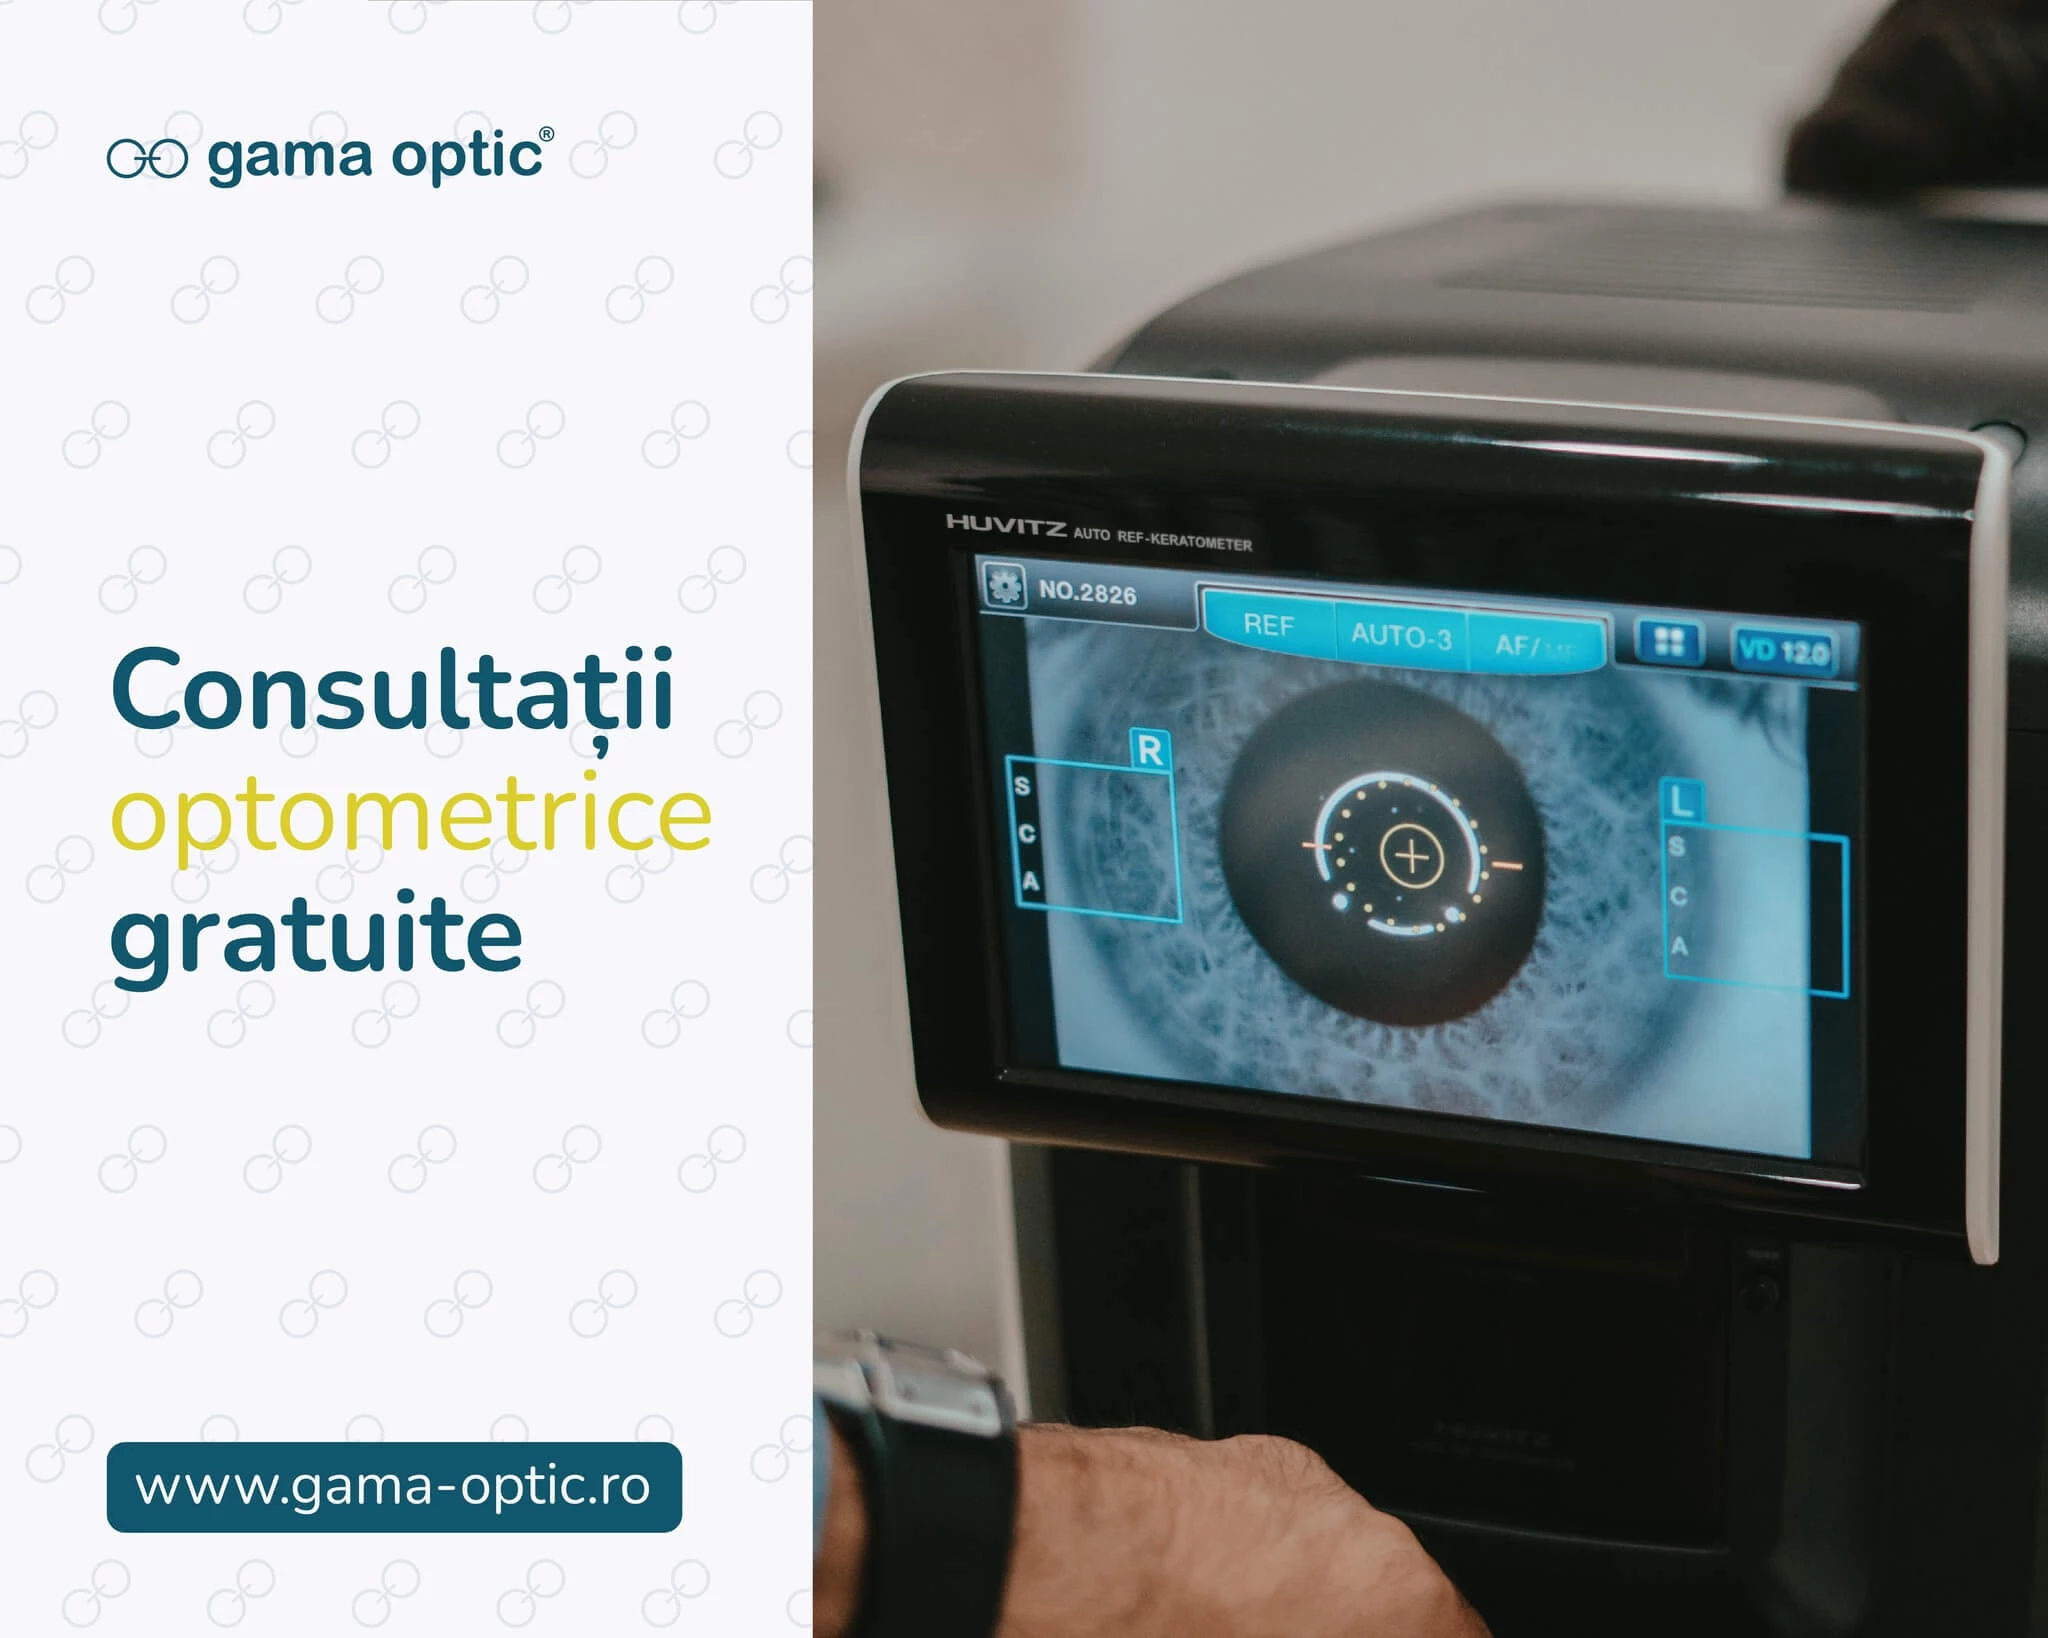 Consultații optometrice gratuite la Gama Optic